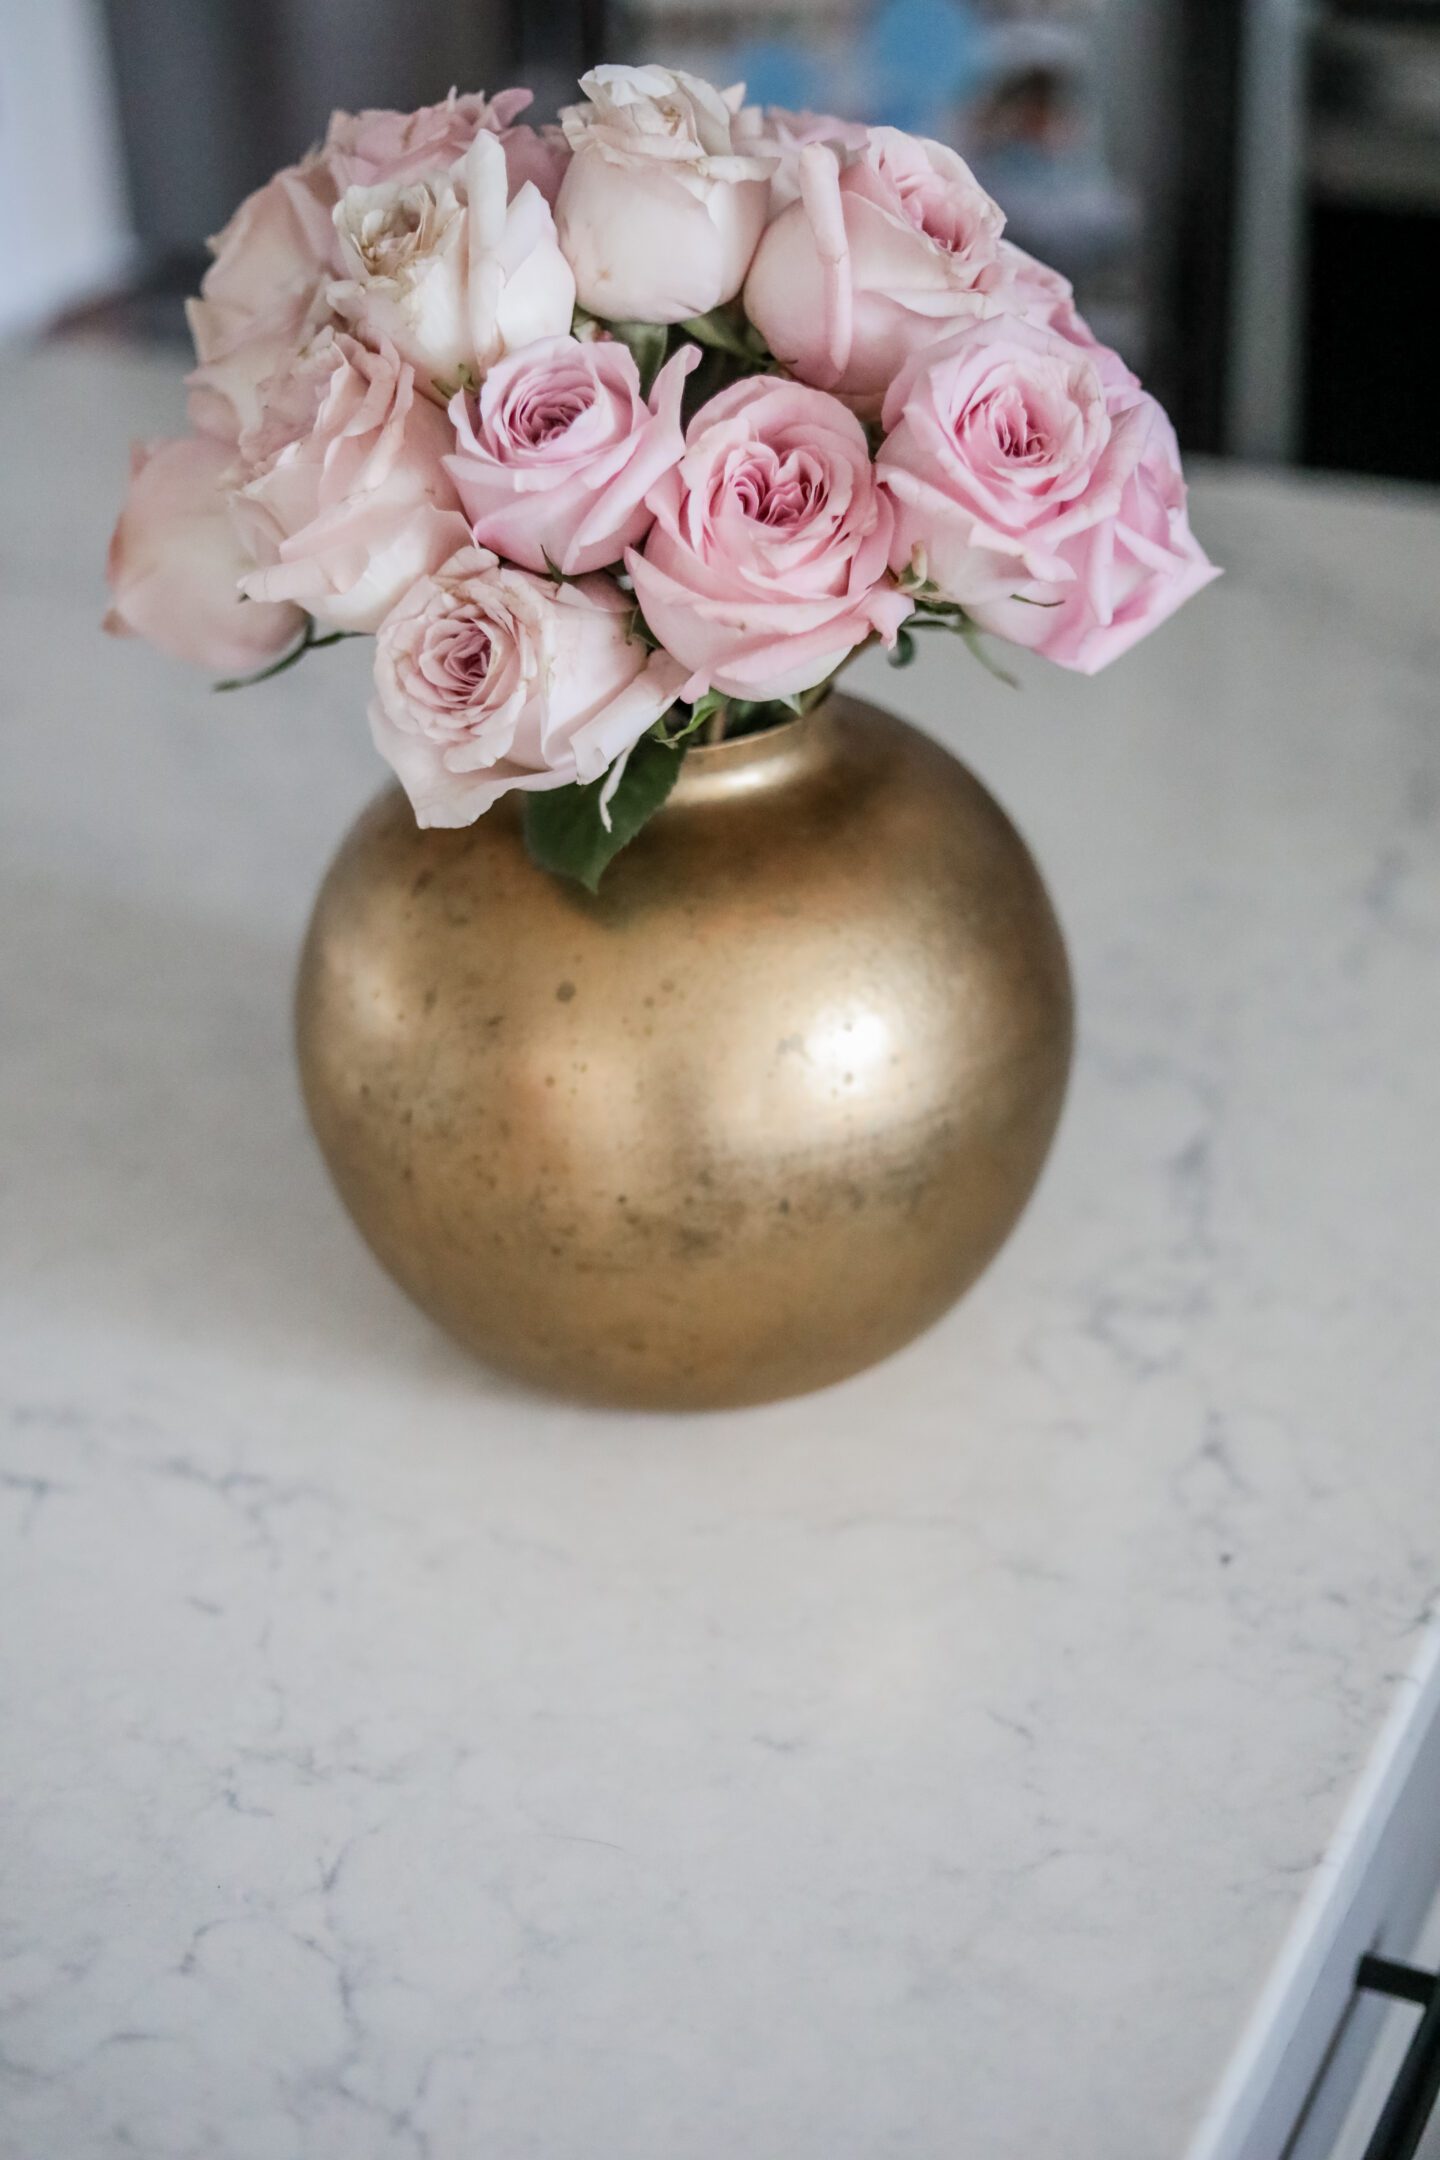 Gold bowl vase - COOL SH*T I LOVELOVELOVE, Monthly Favorites January 2023